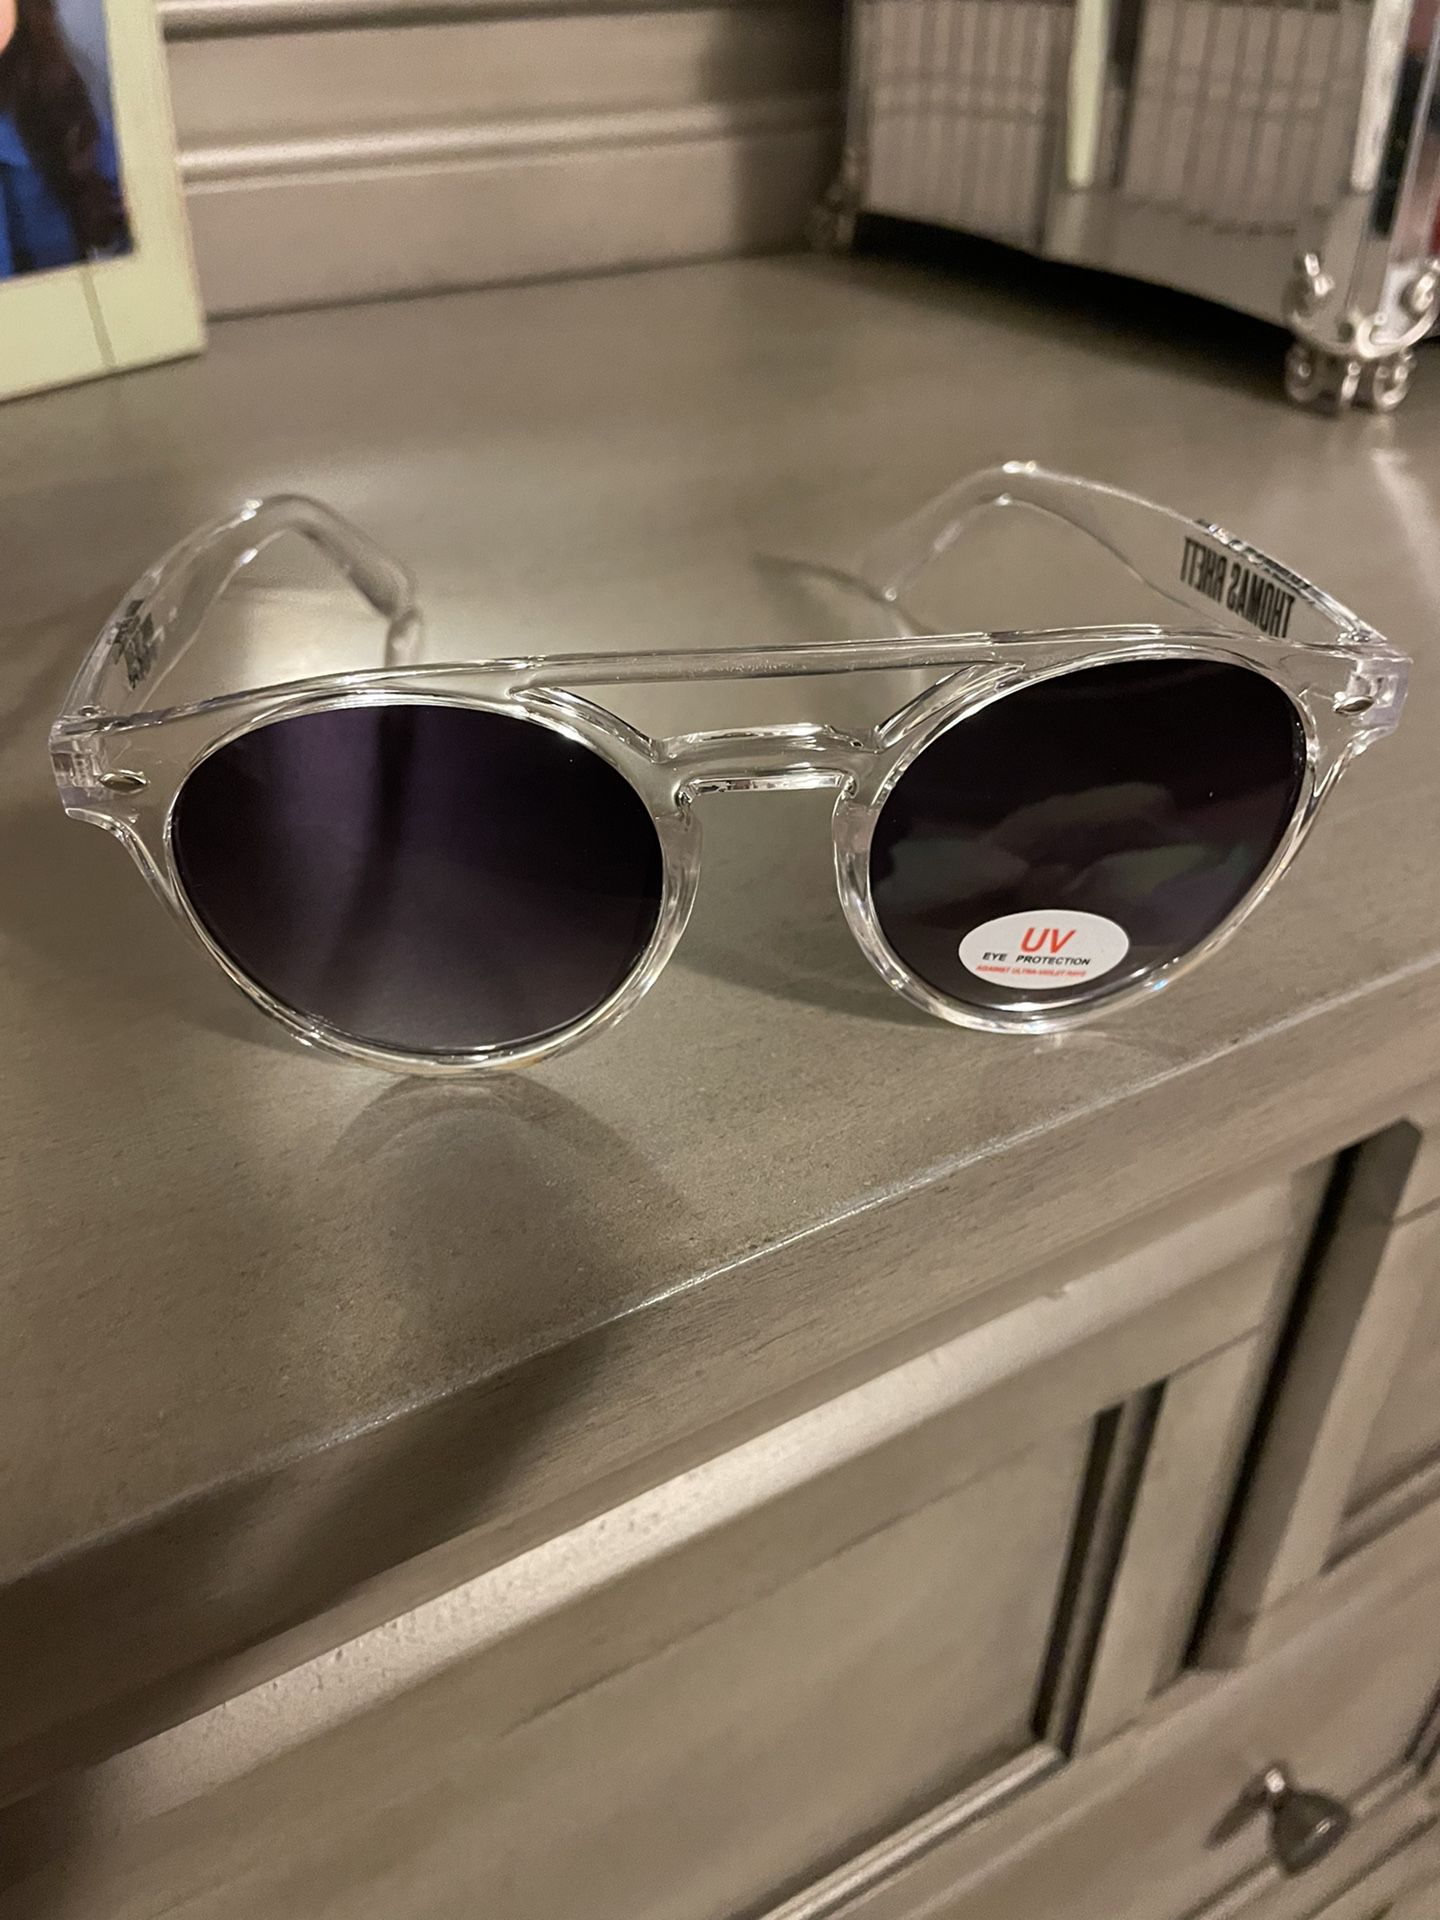 Thomas Rhett Sunglasses Brand New Never Worn 